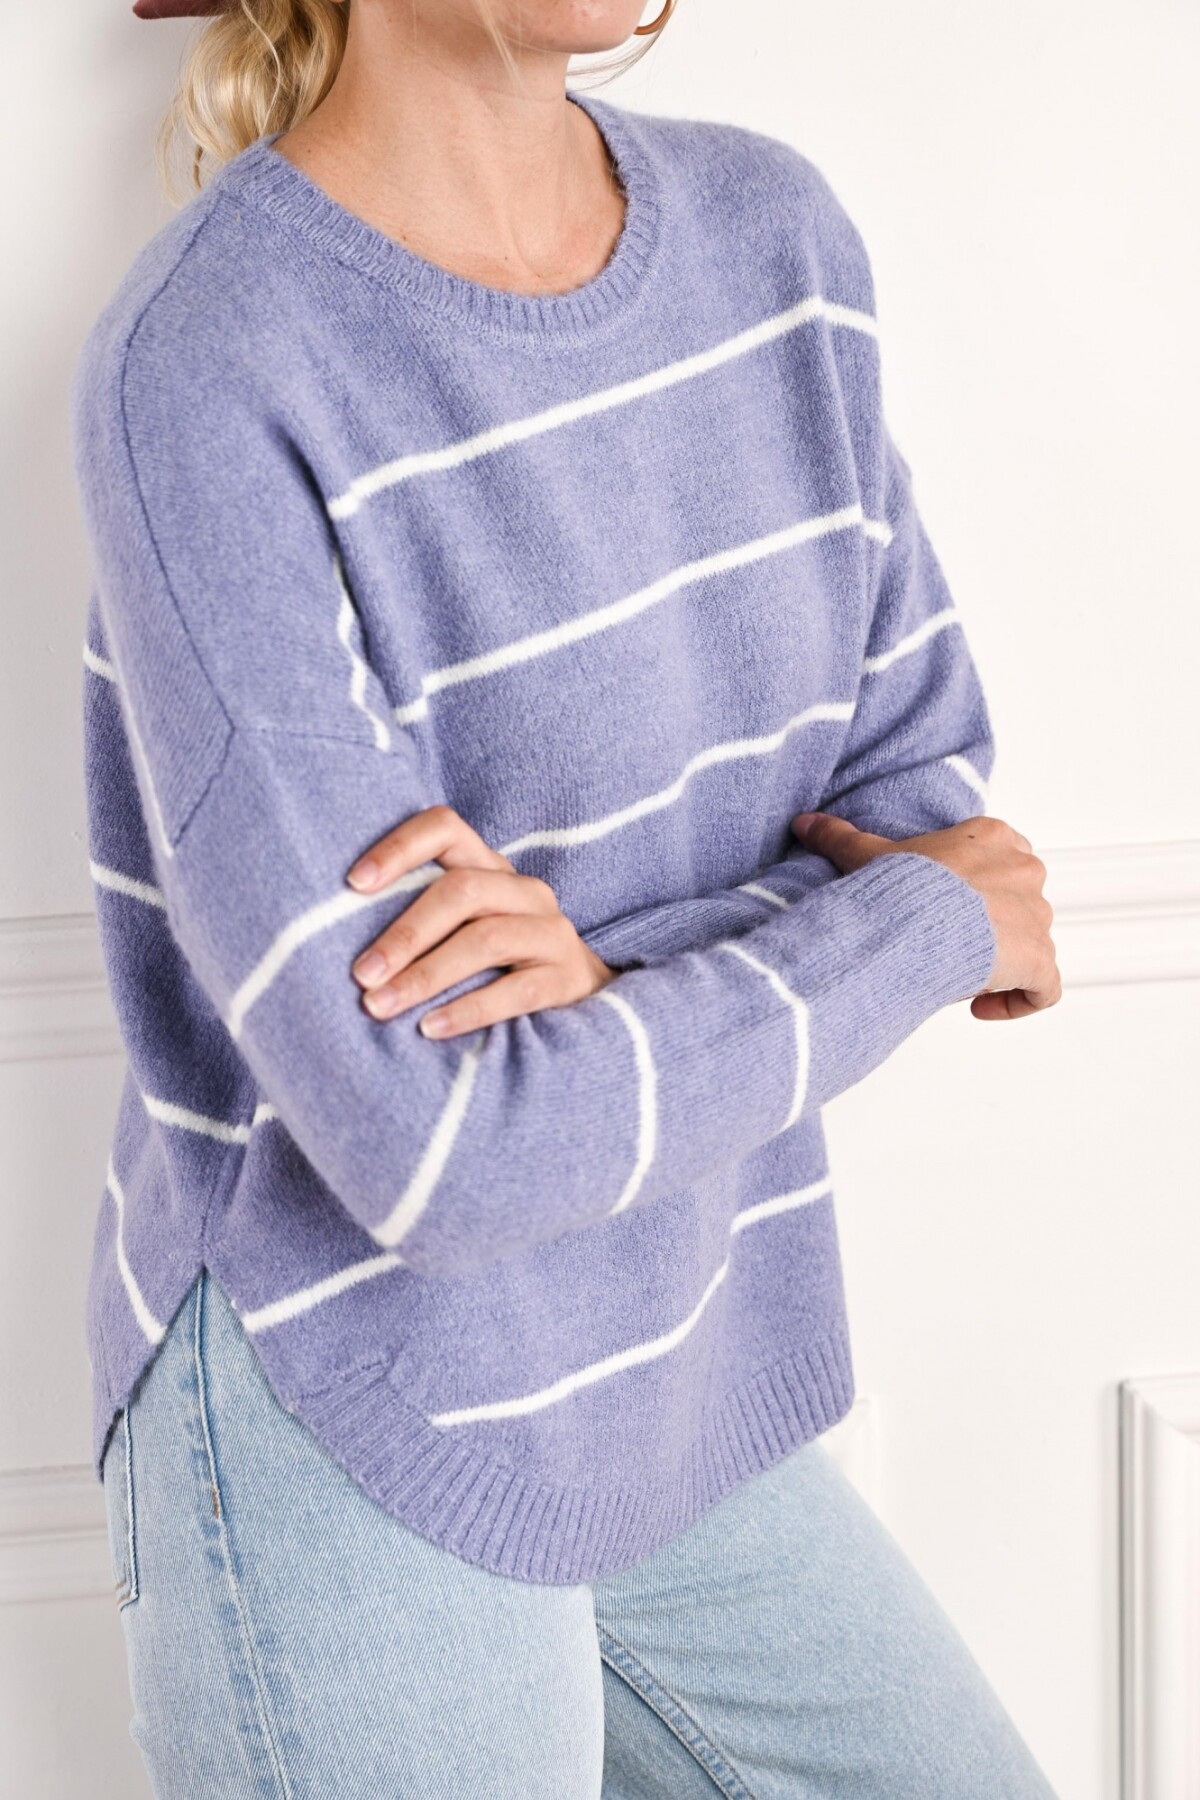 Sweater Rayado Lila